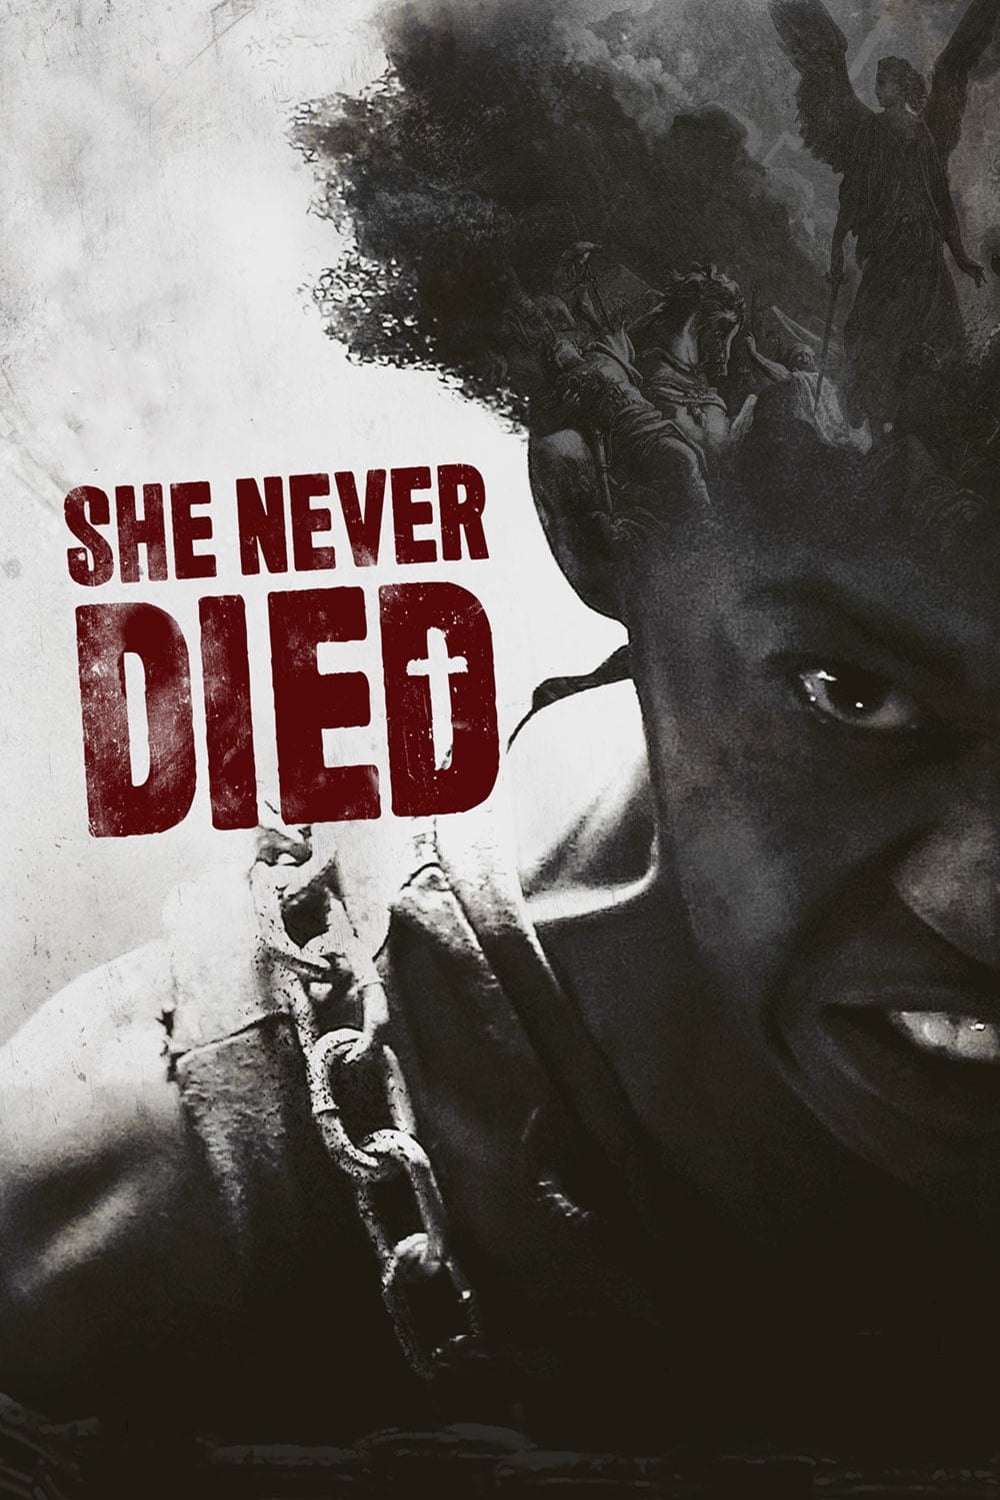 او هرگز نمرده (She Never Died)